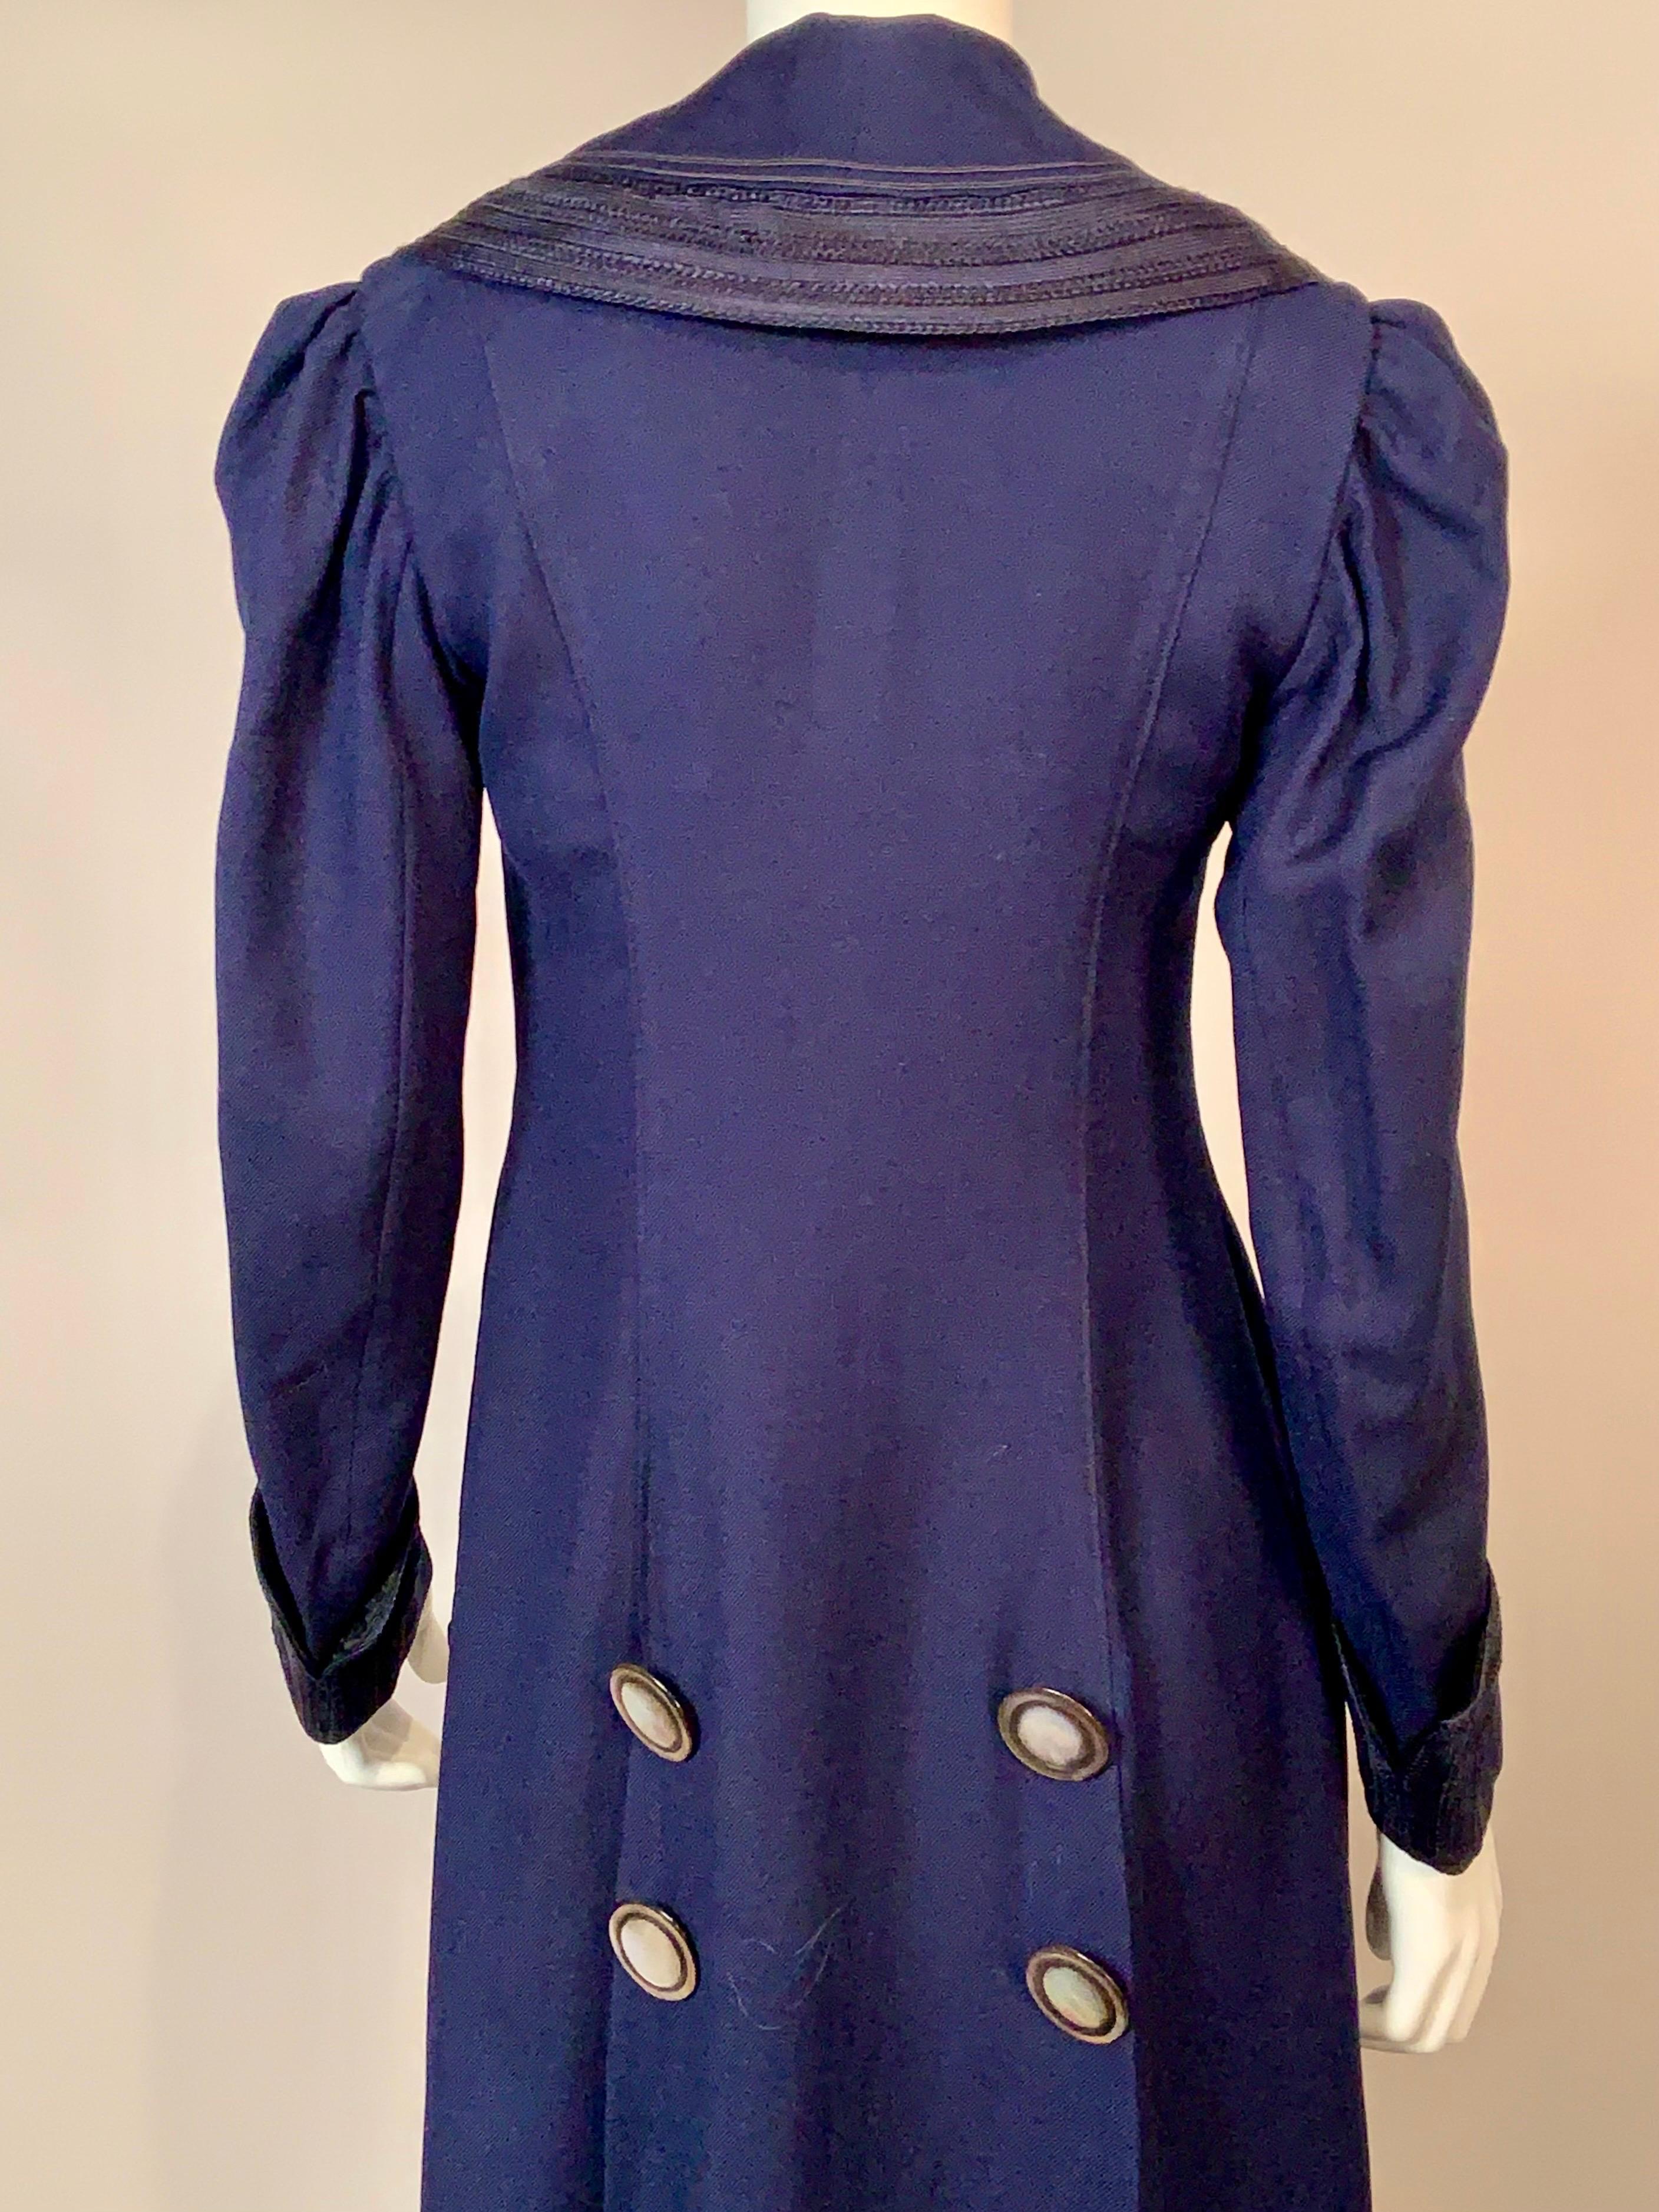 Edwardian Navy Blue Wool Coat with Braid Trim 8